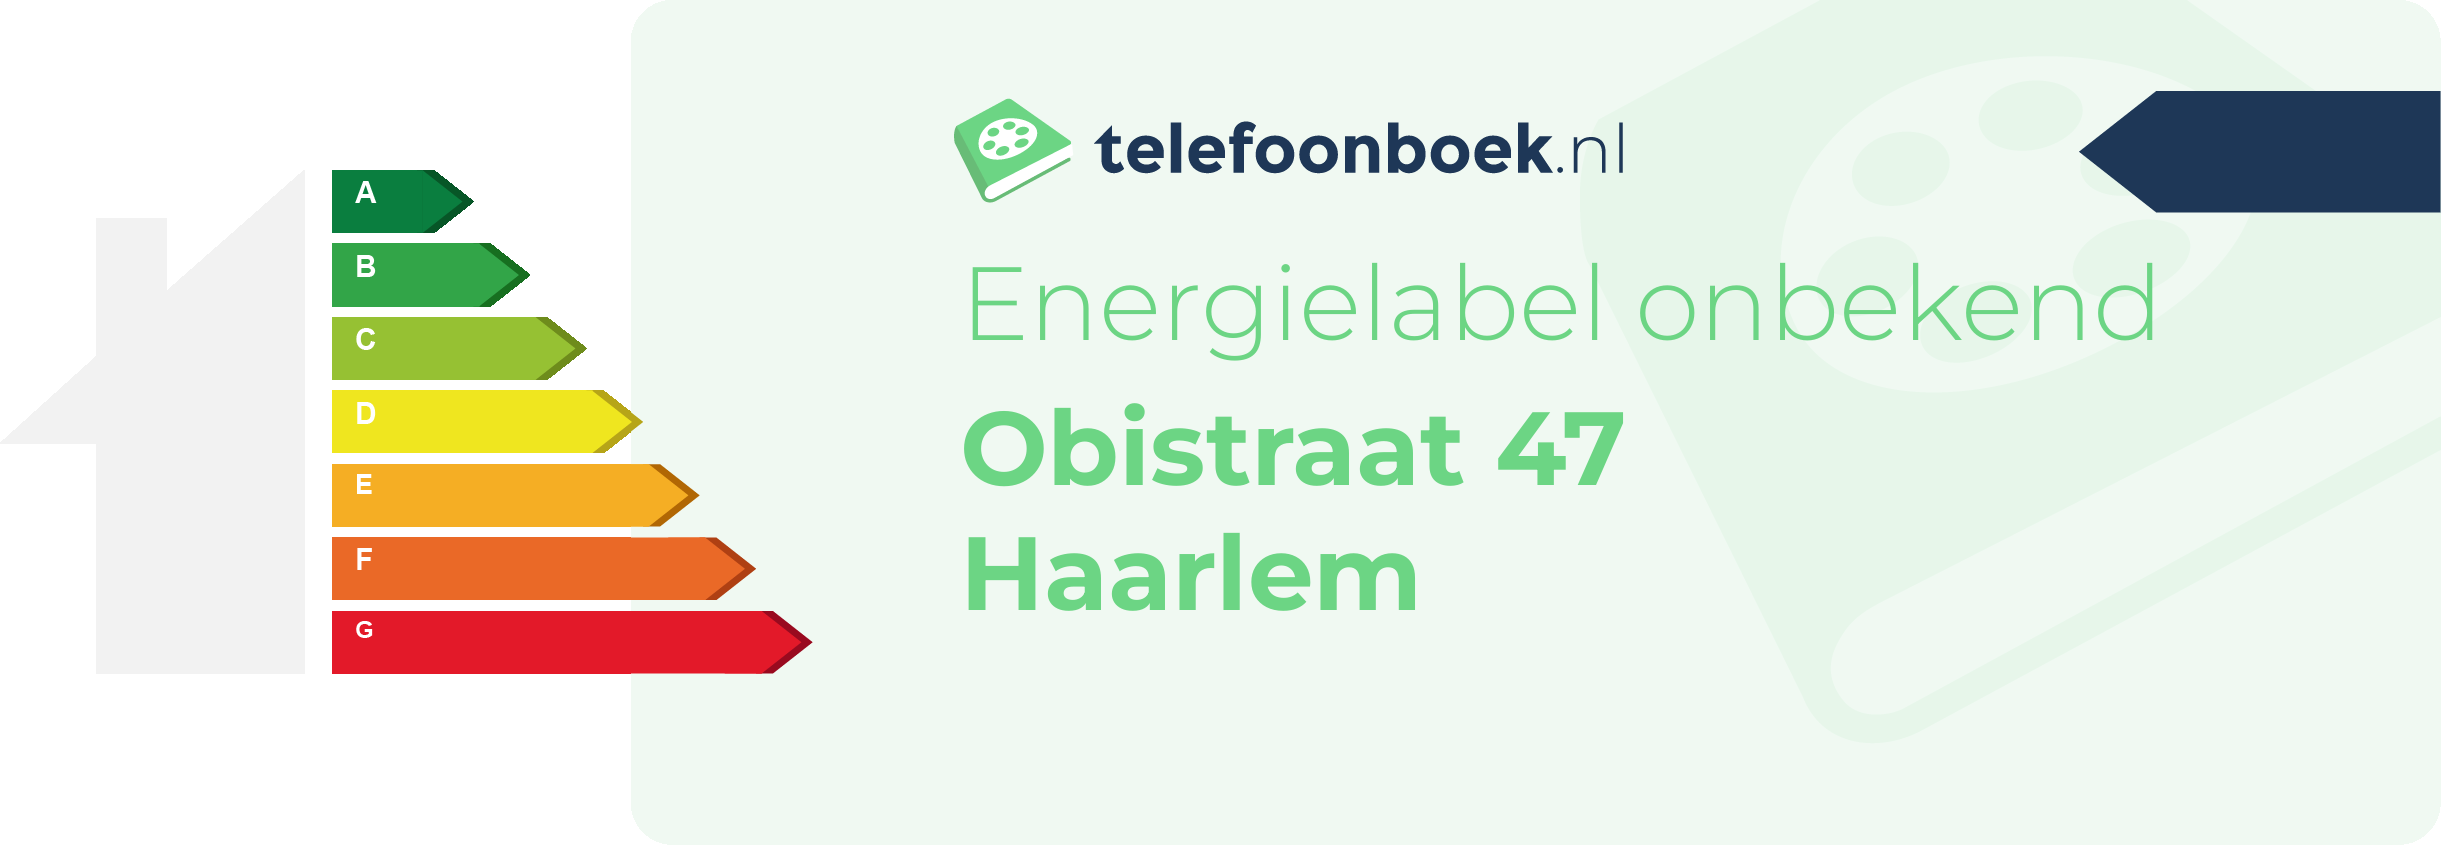 Energielabel Obistraat 47 Haarlem